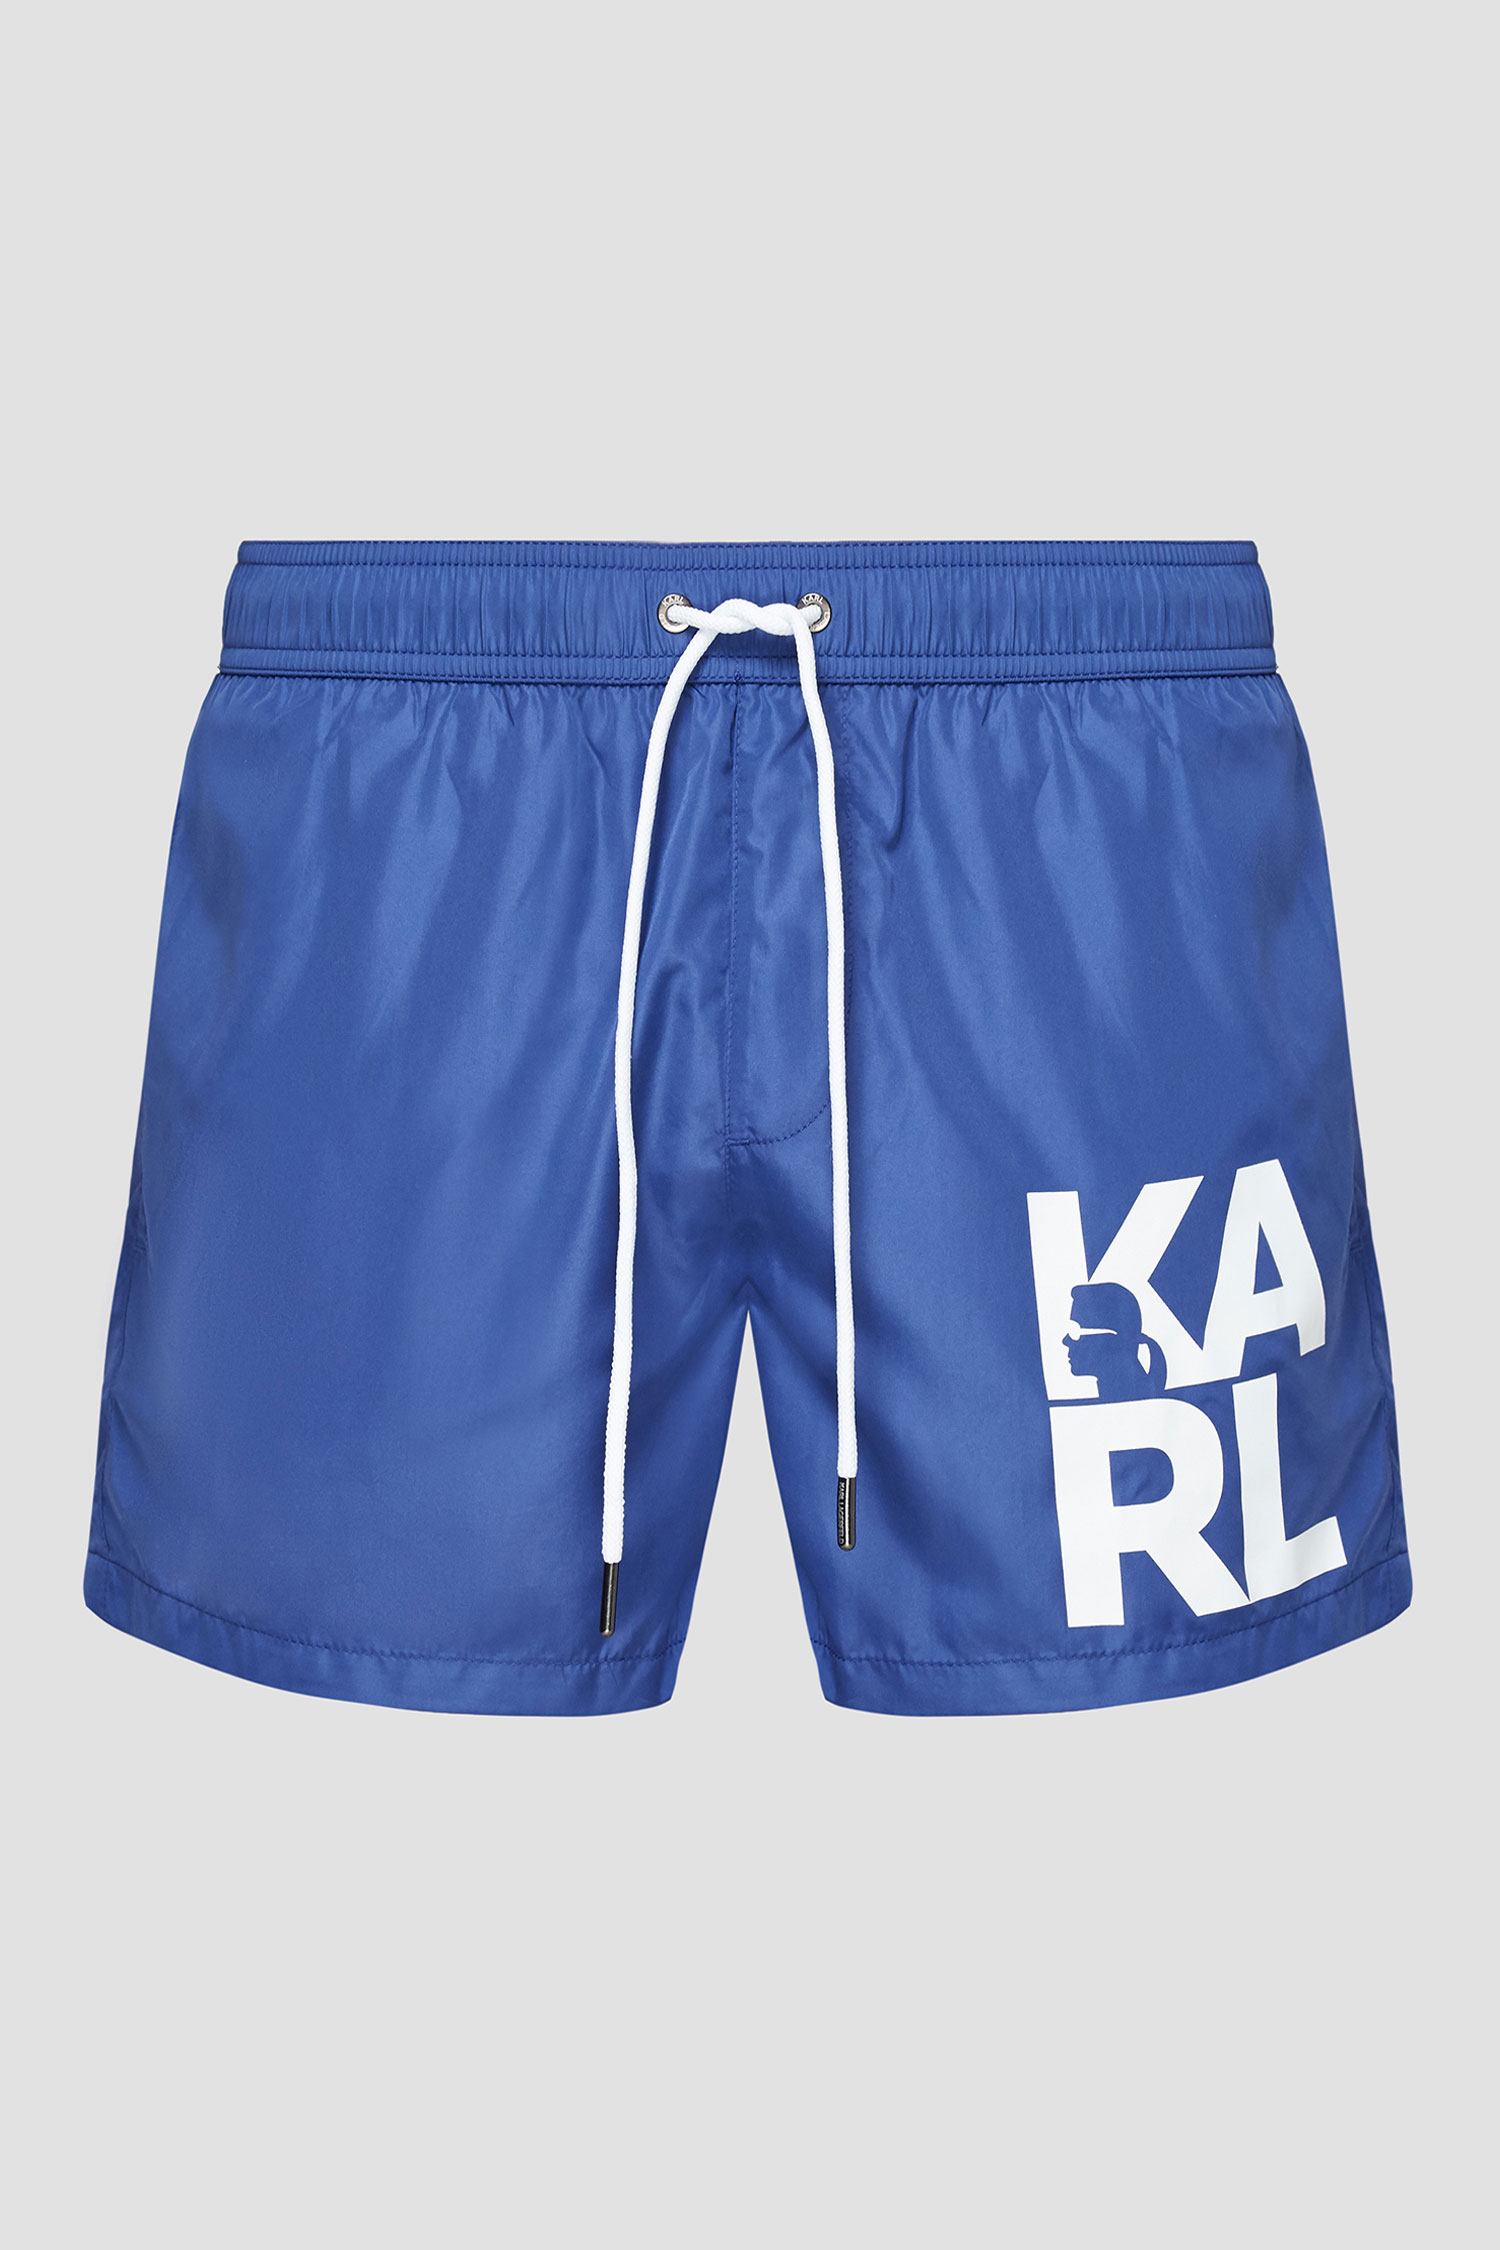 Чоловічі сині плавальні шорти Karl Lagerfeld KL21MBS02;NAVY